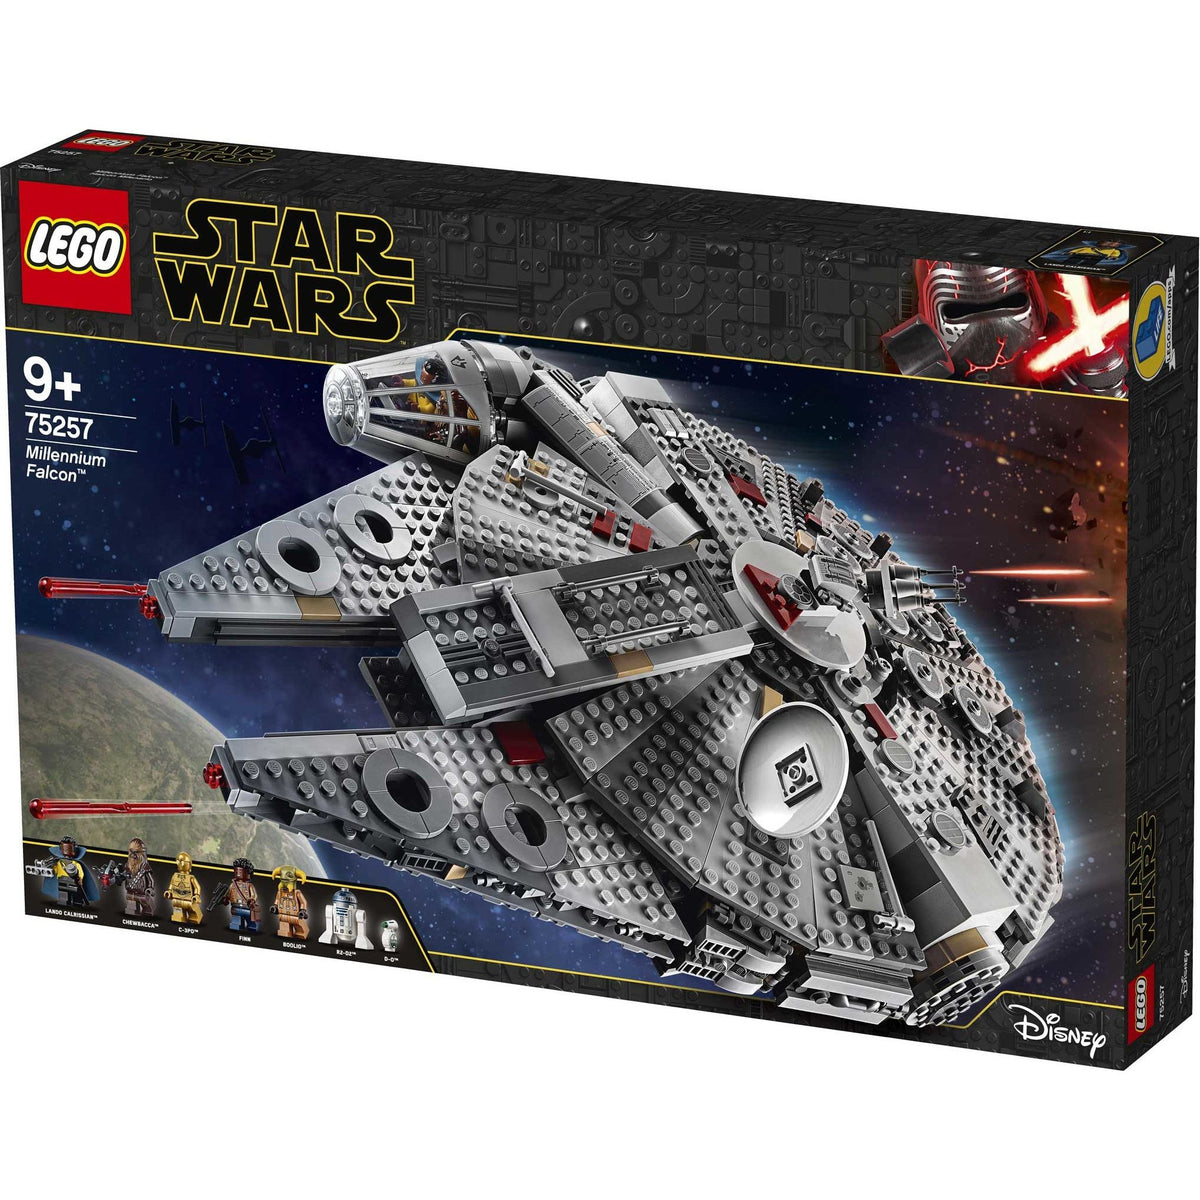 LEGO Star Wars 75257 Millennium Falcon — Brick-a-brac-uk